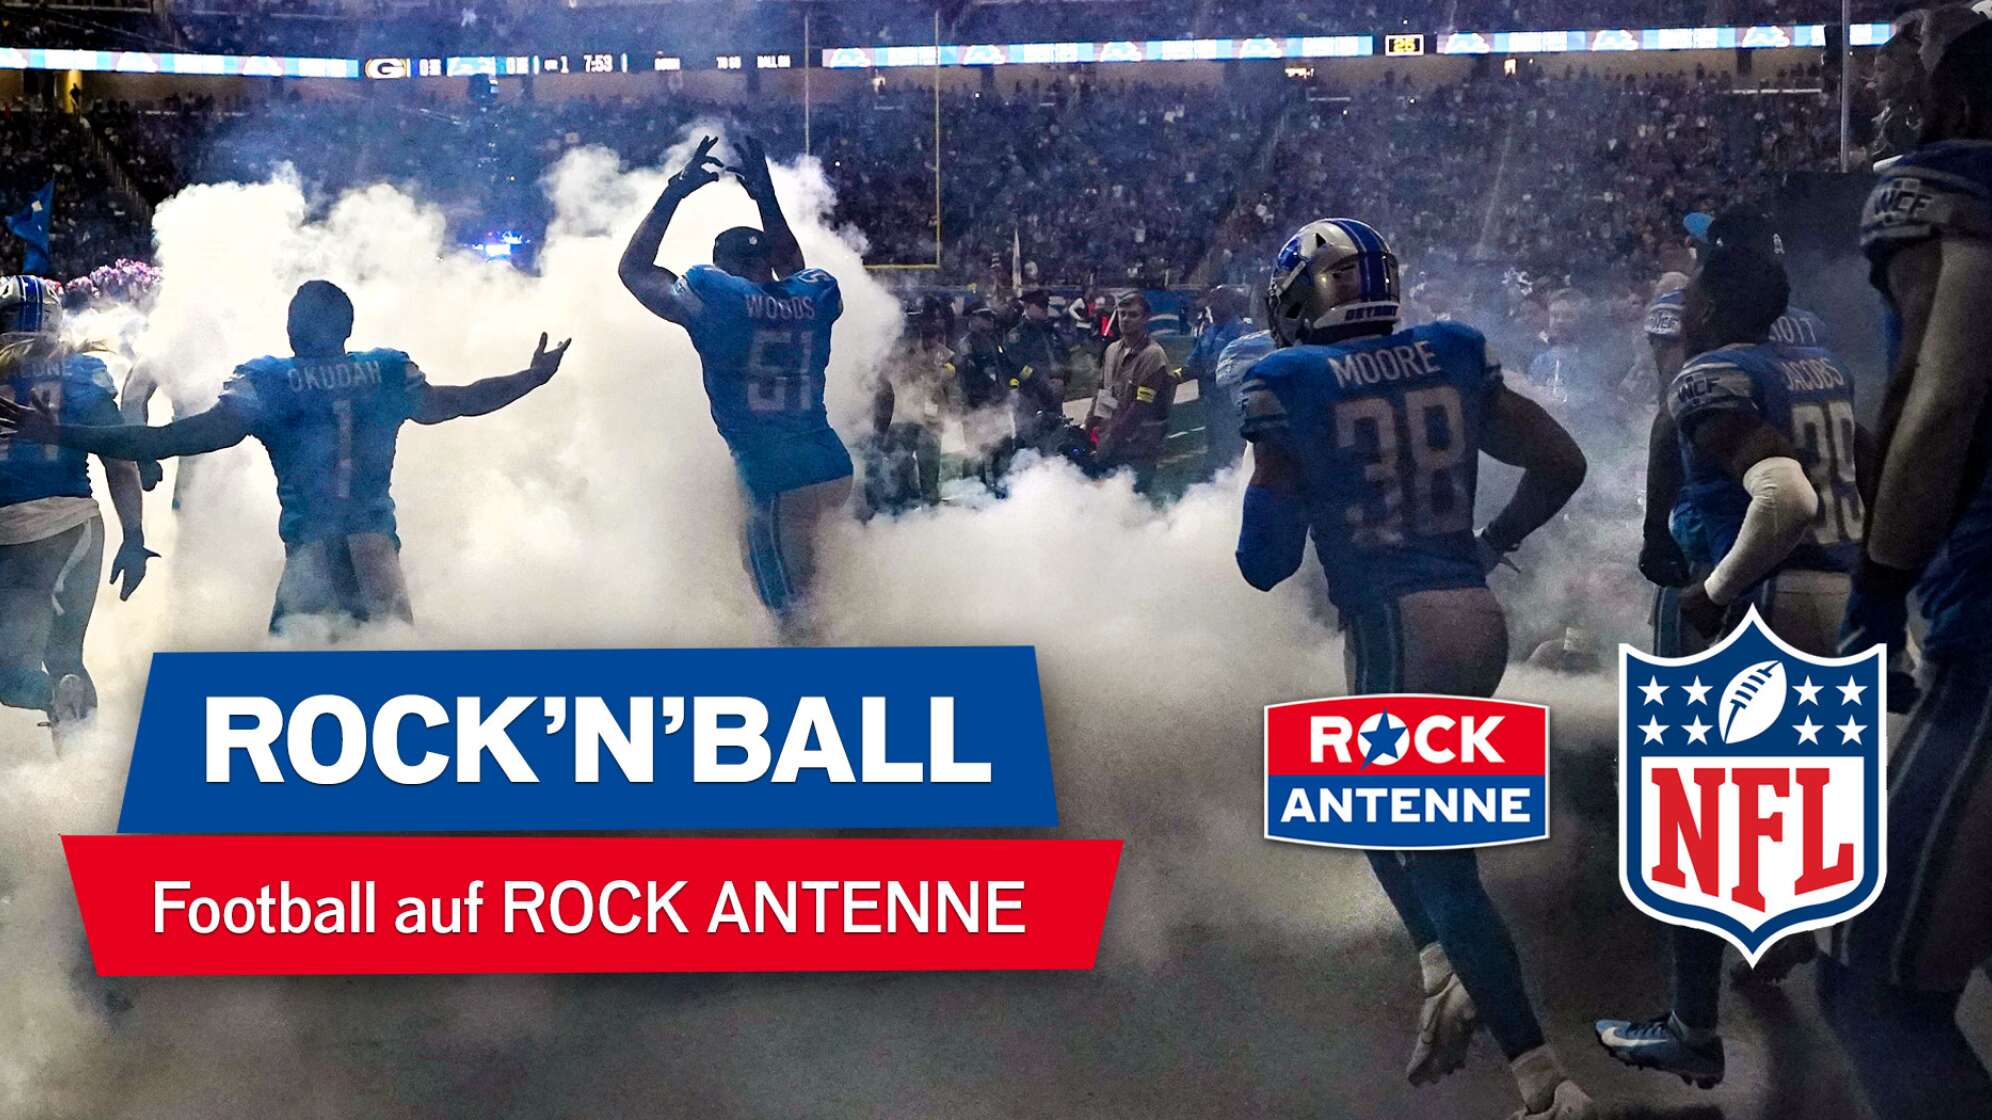 Ein Bild von Footballspielern, die aus der Kabine durch Nebel auf das Spielfeld laufen; Text: "ROCK'N'BALL - Football auf ROCK ANTENNE", dazu die Logos von ROCK ANTENNE und der NFL